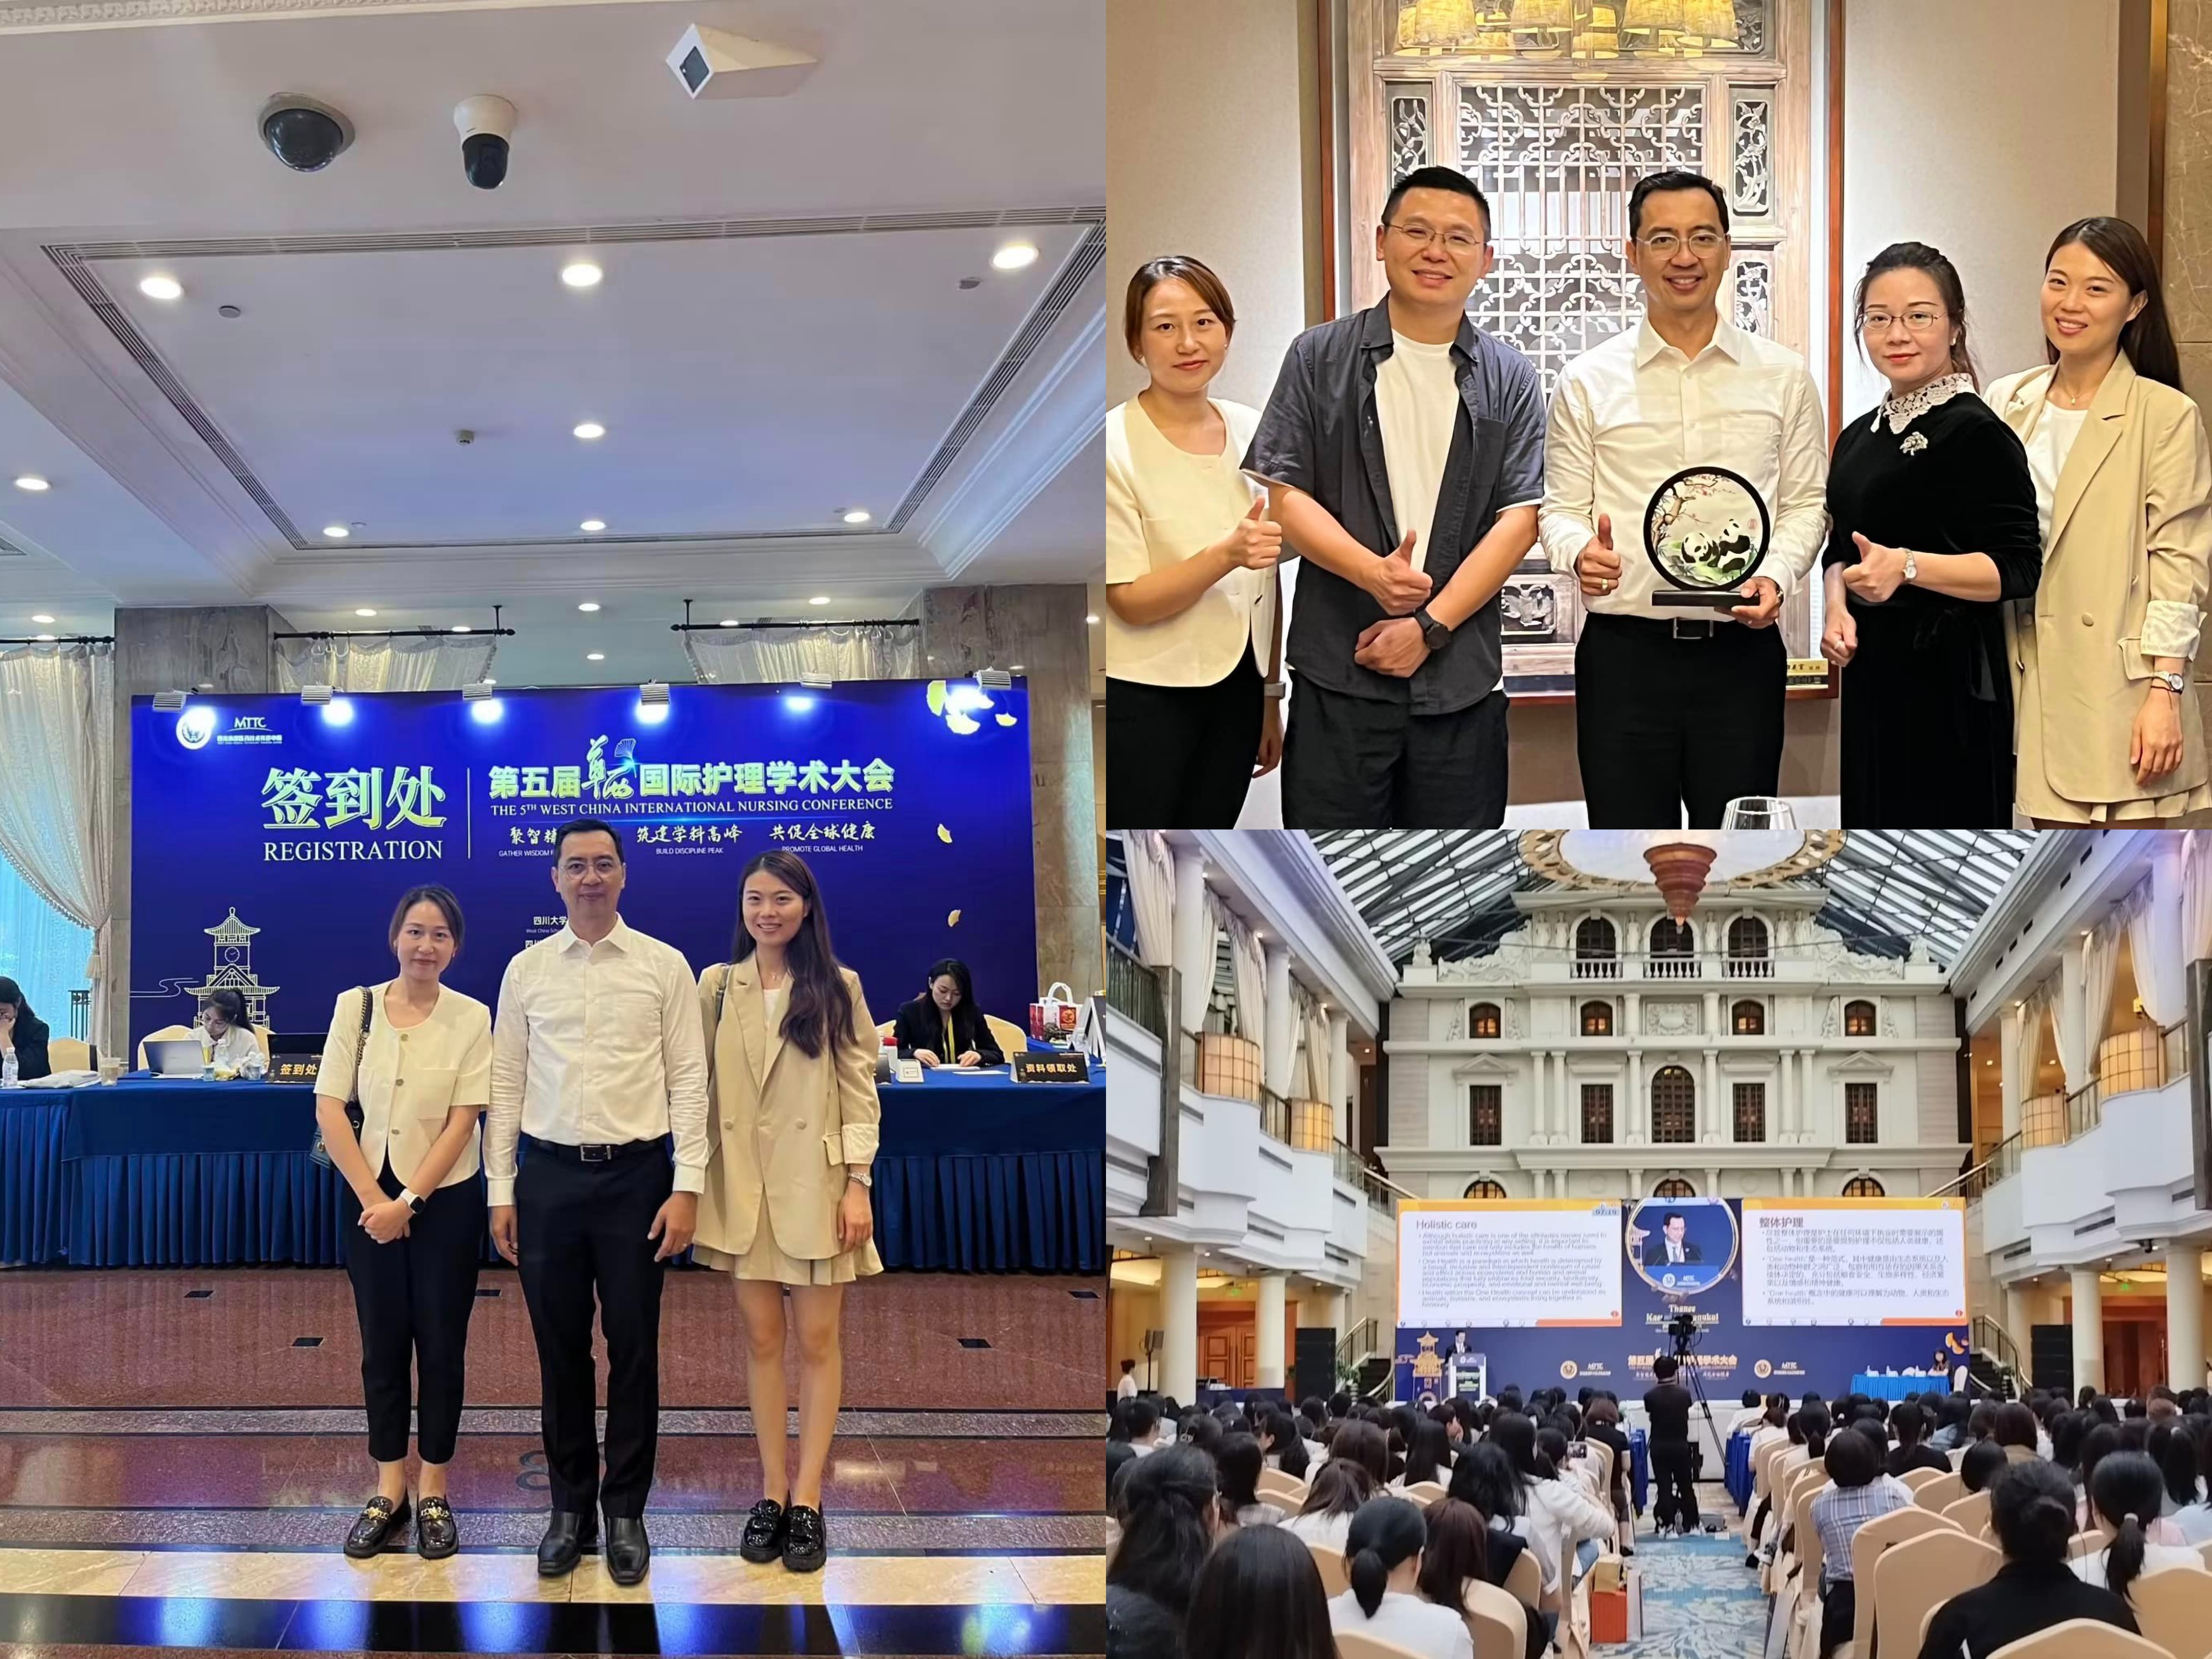 
	คณบดีได้รับเชิญเป็นวิทยากรบรรยายการประชุมวิชาการนานาชาติ 5th West China International Nursing Conference
